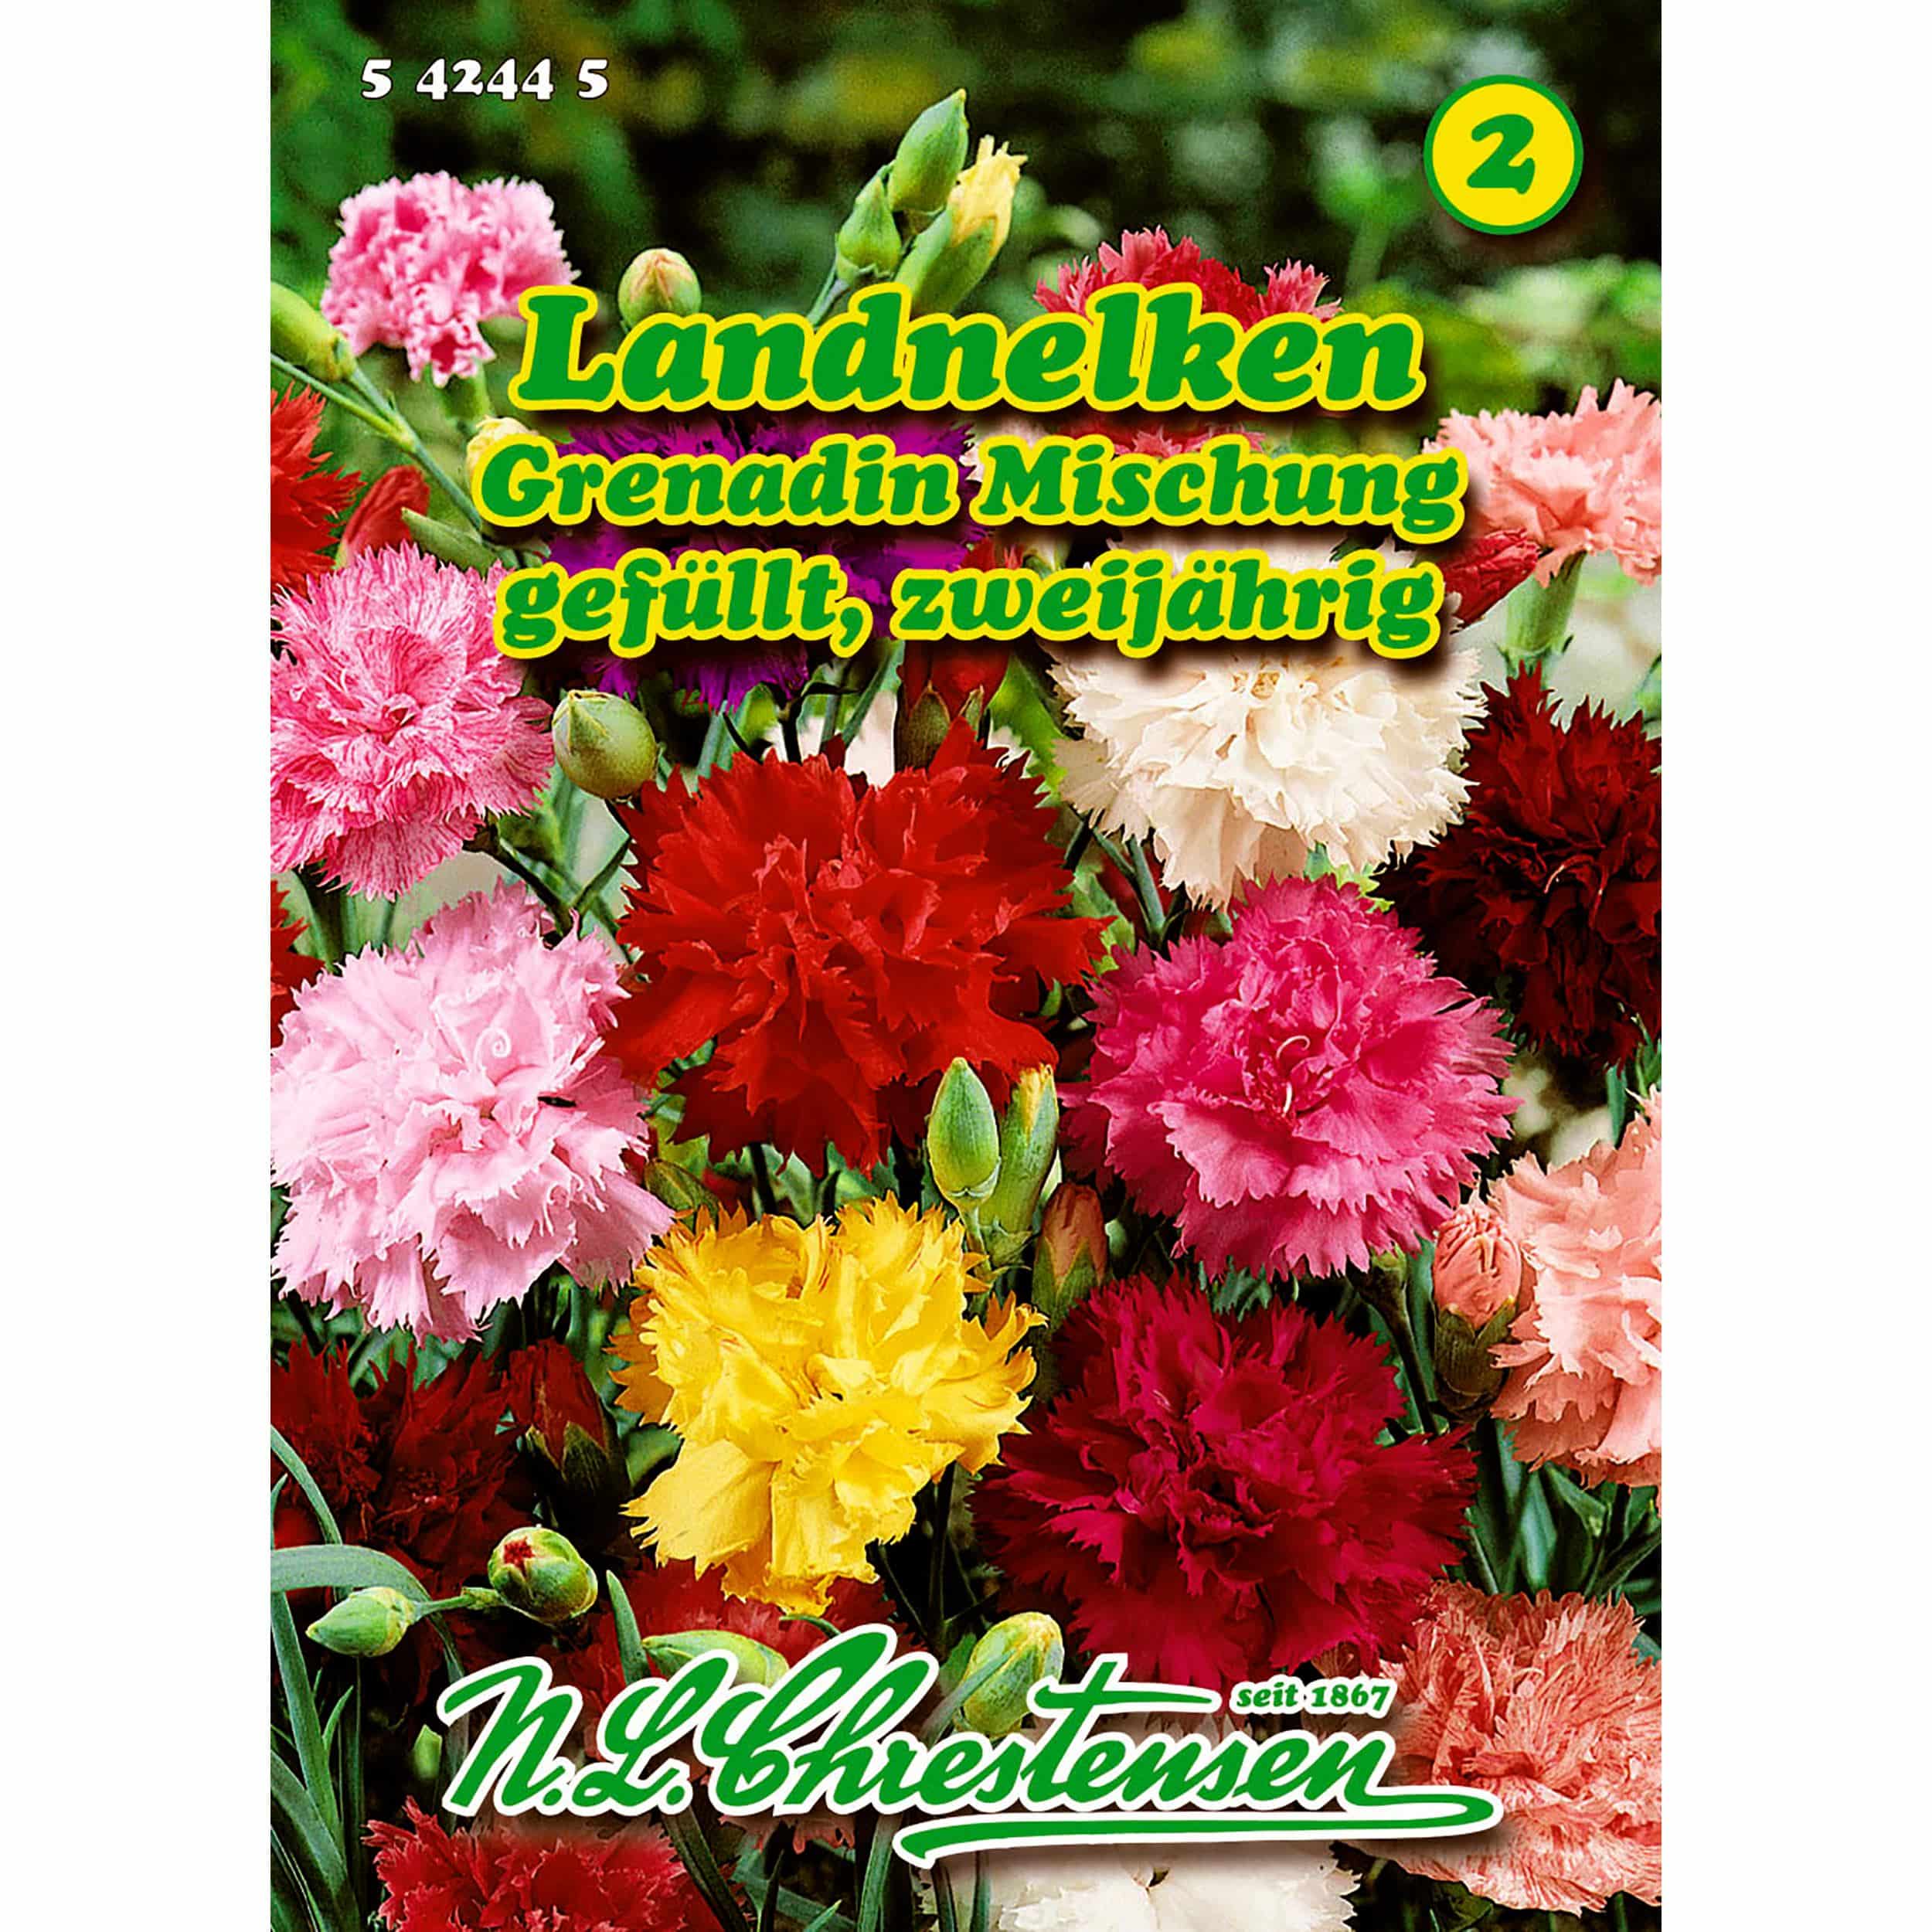 Dianthus, Landnelken, Grenadin Mischung